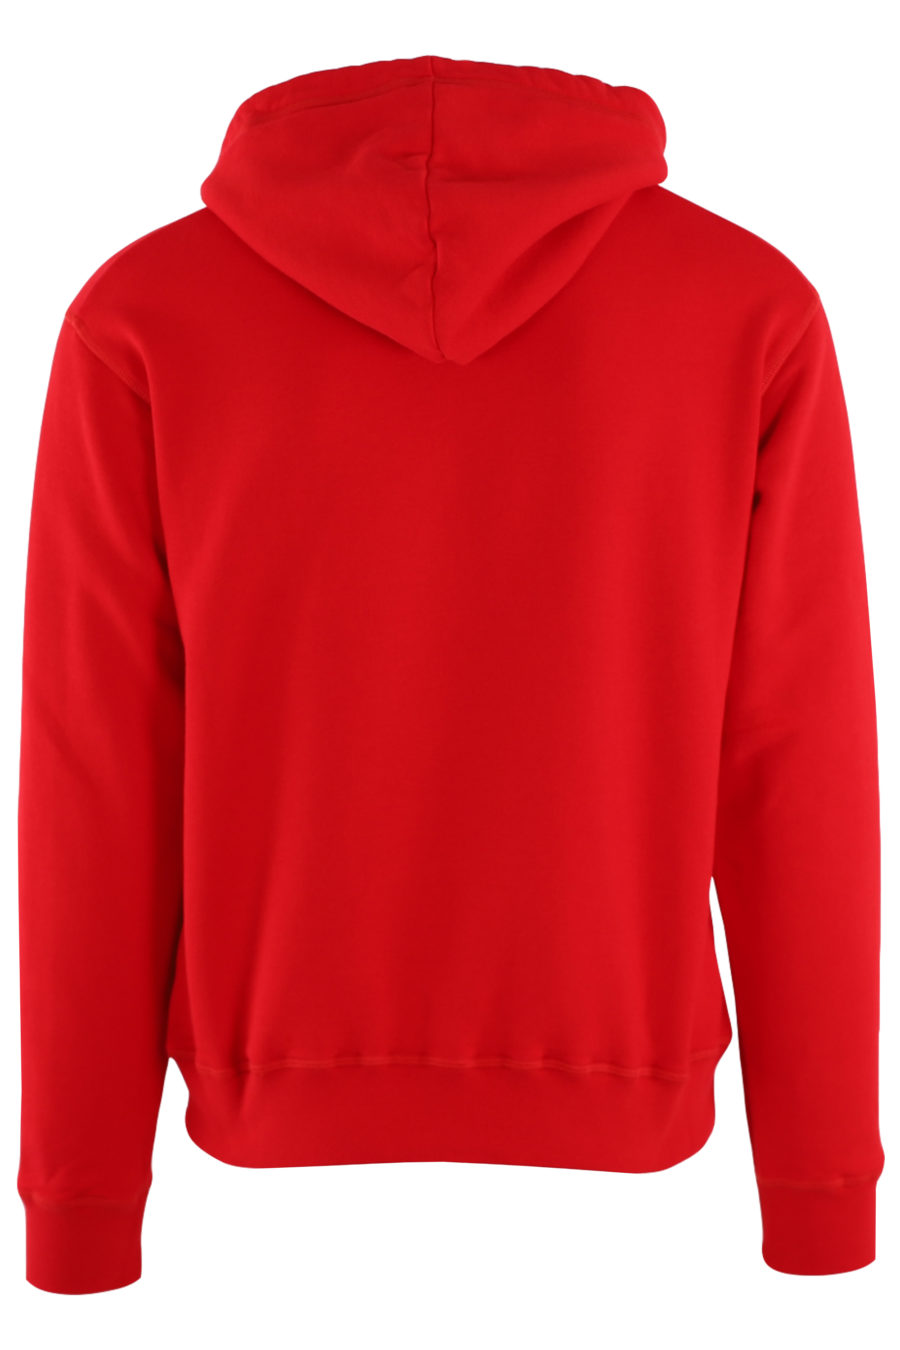 Sudadera roja con capucha y logo "Icon Spray" - IMG 8816